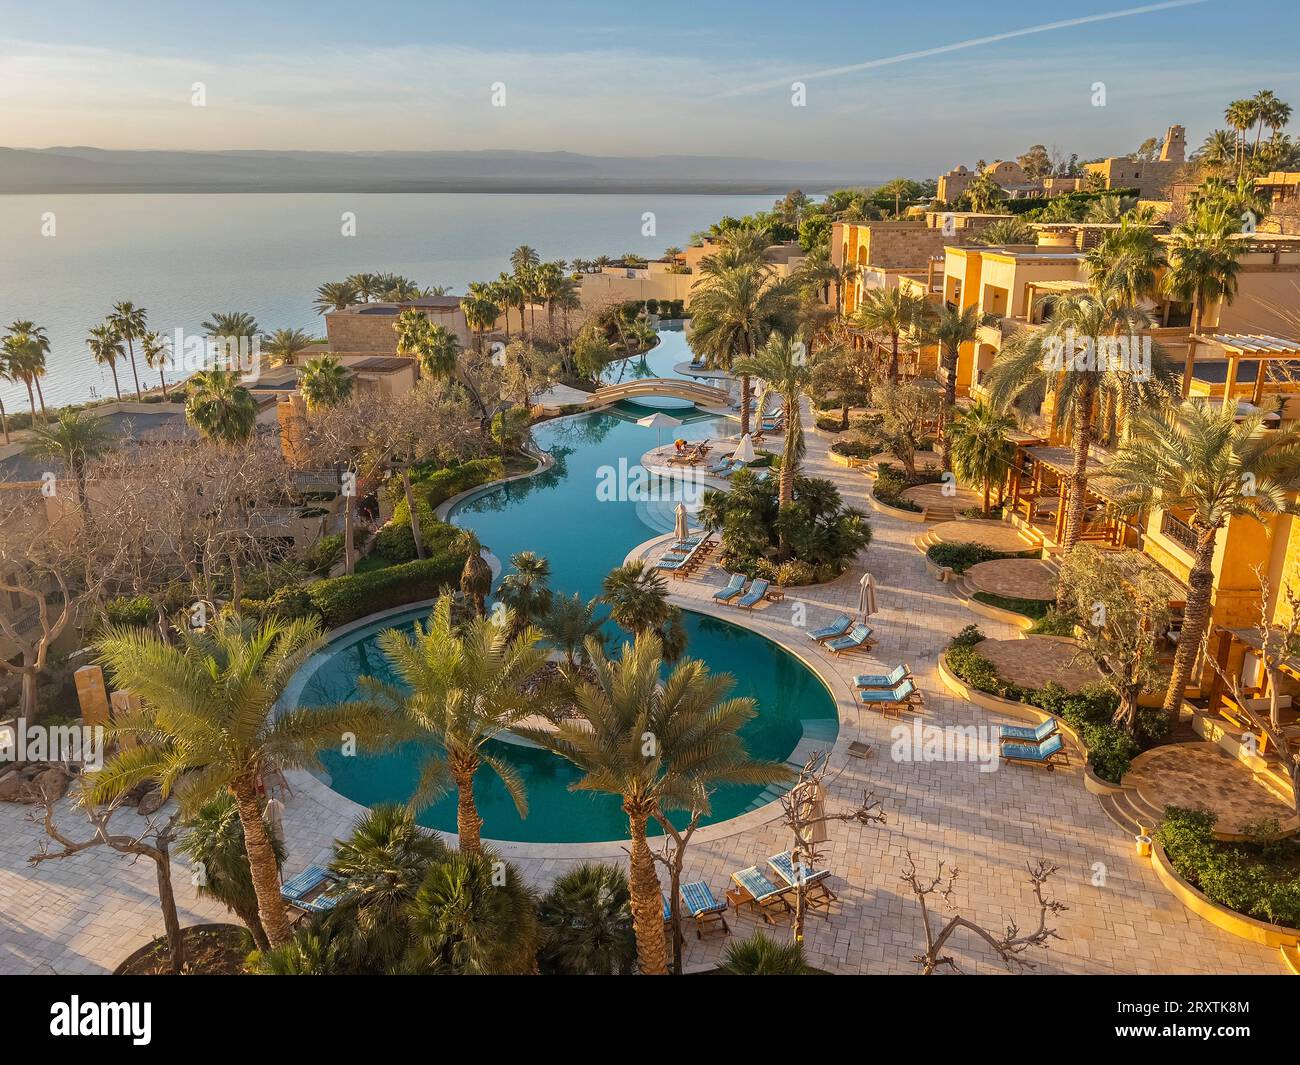 Tramonto al Kempinski Hotel Ishtar, un resort di lusso a cinque stelle sul Mar morto ispirato ai Giardini sospesi di Babilonia, Giordania, Medio Oriente Foto Stock